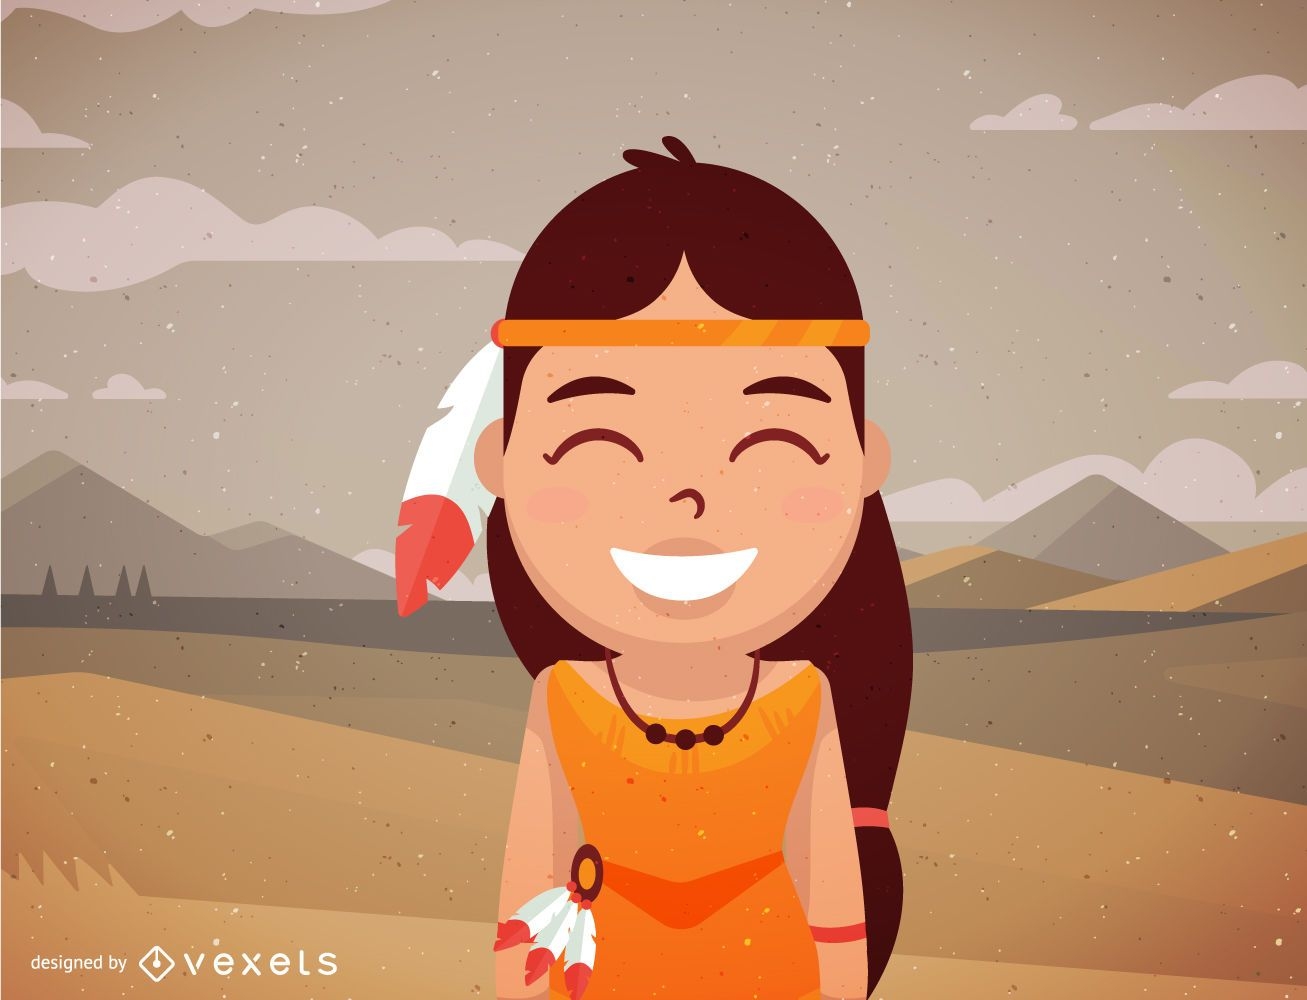 Weibliche indianische Charakterkarikatur